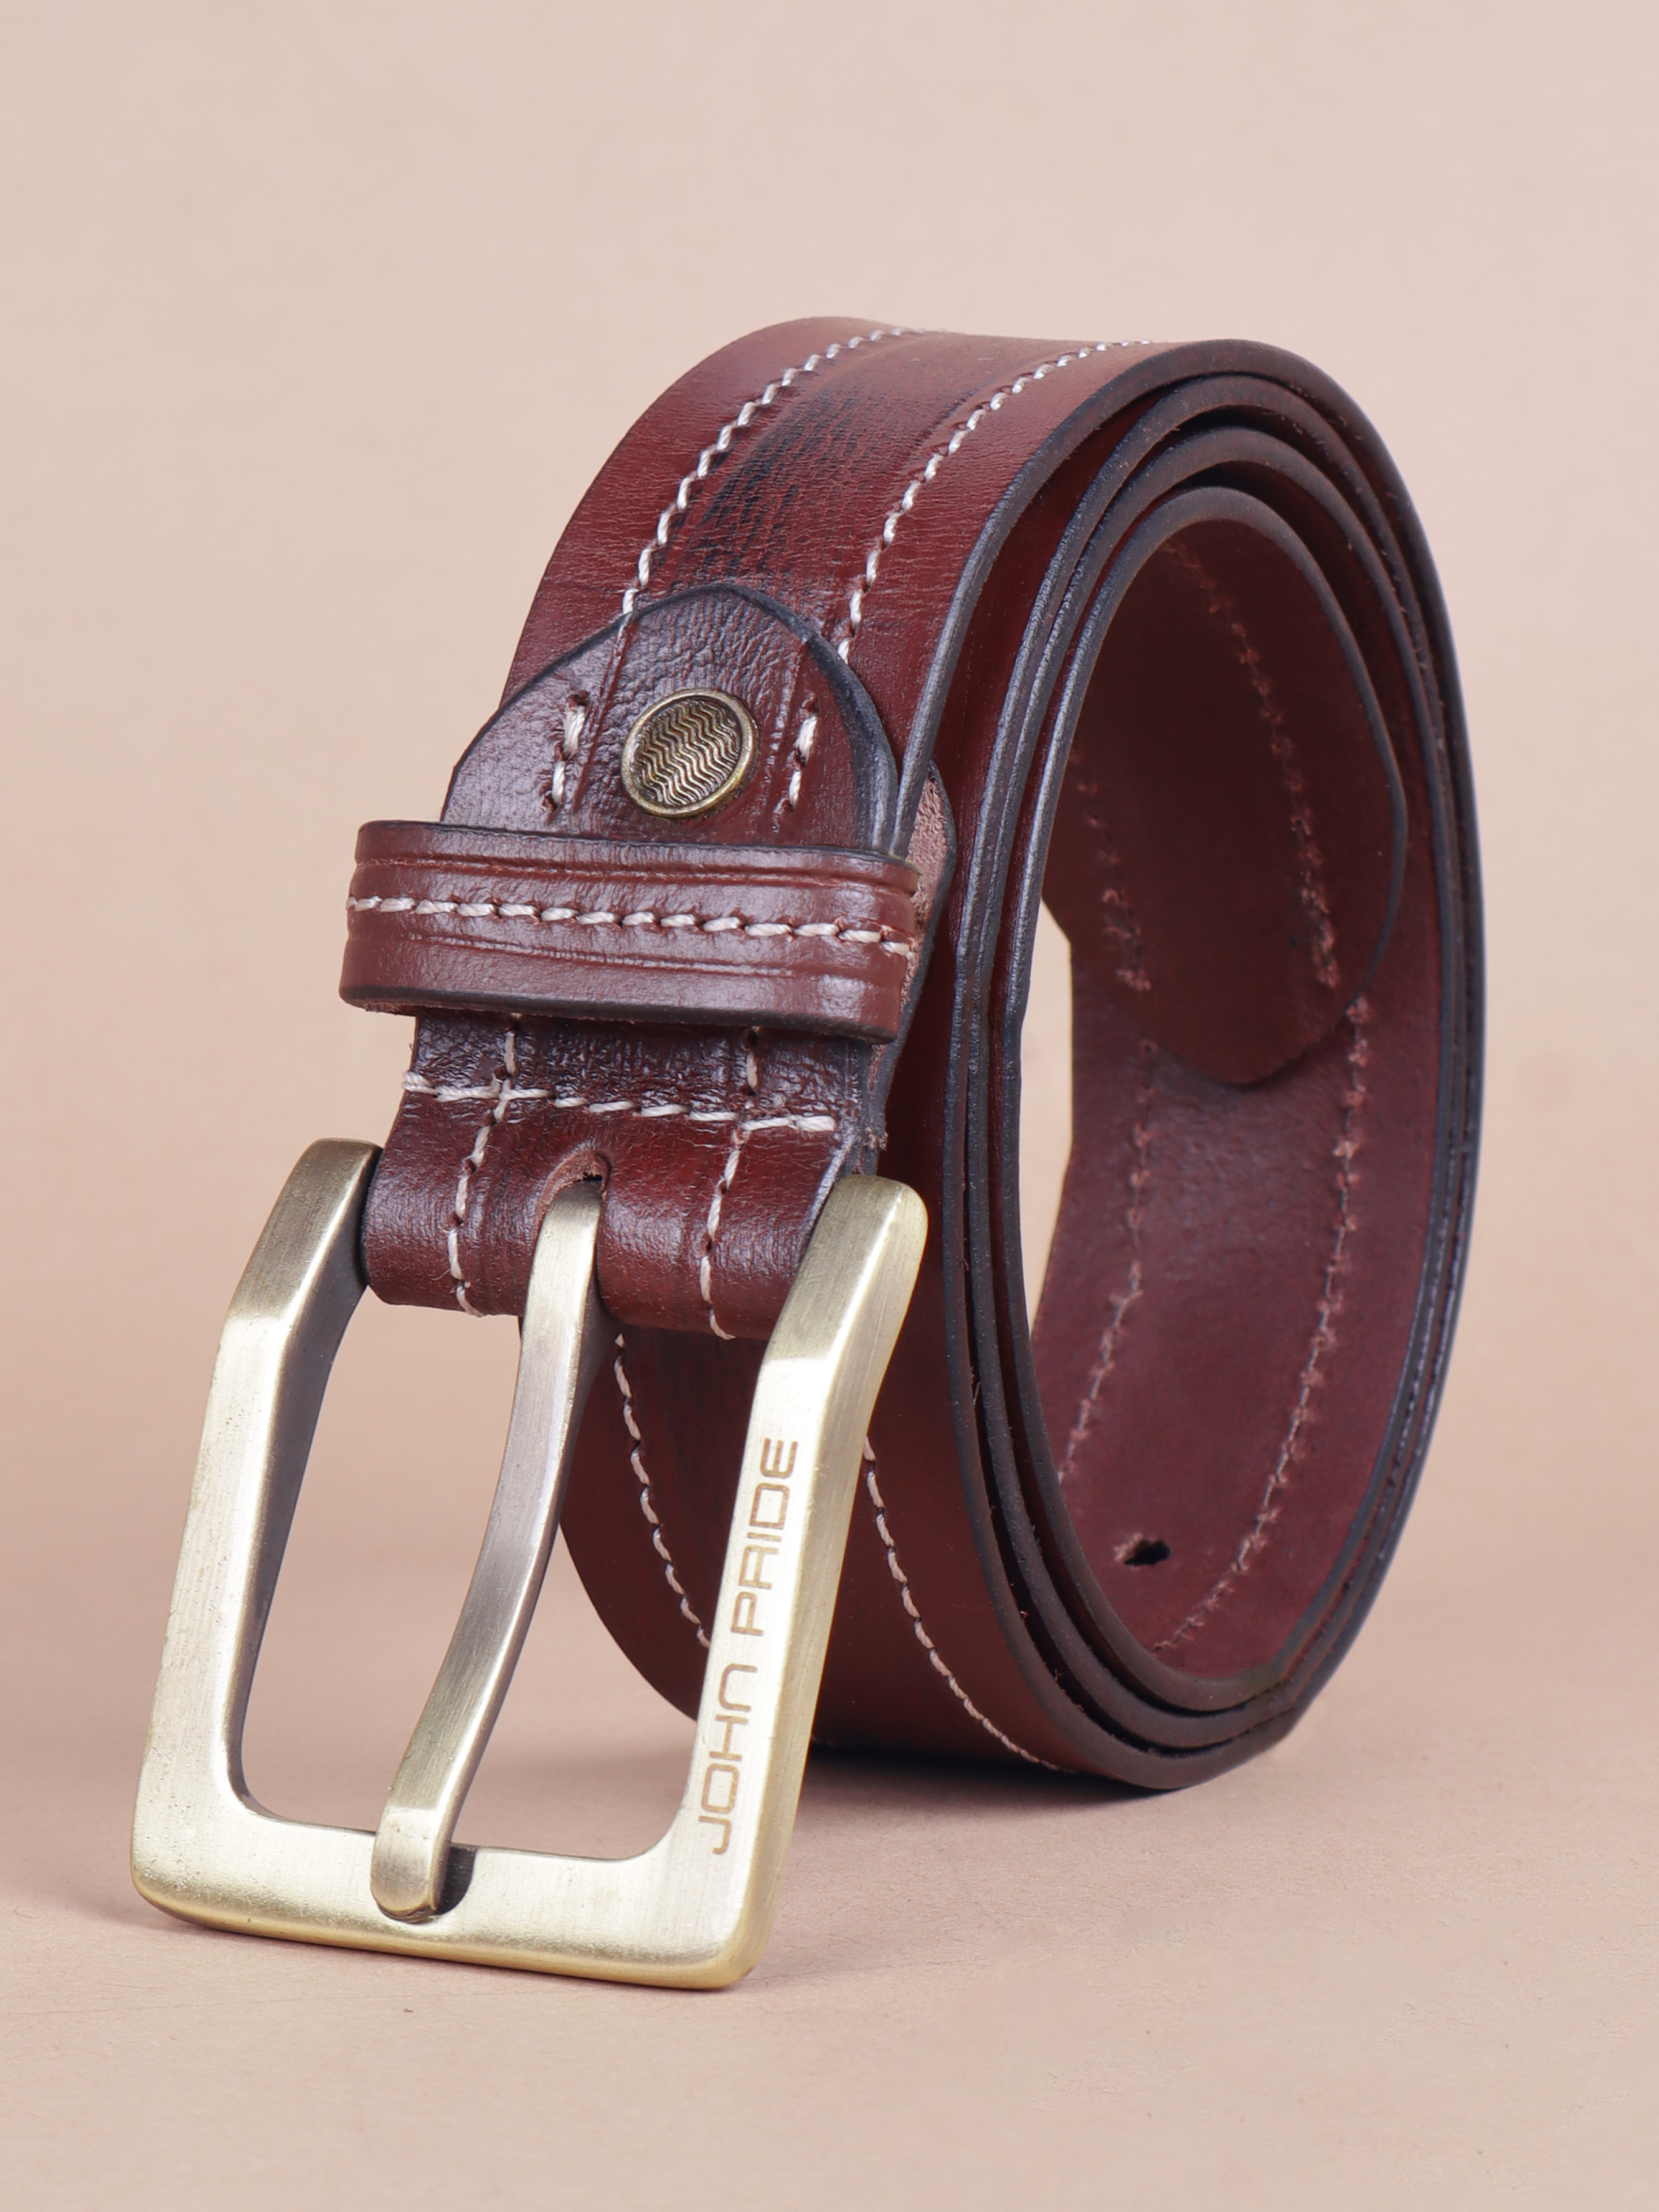 accessories/belts/JPBT1008/jpbt1008-1.jpg